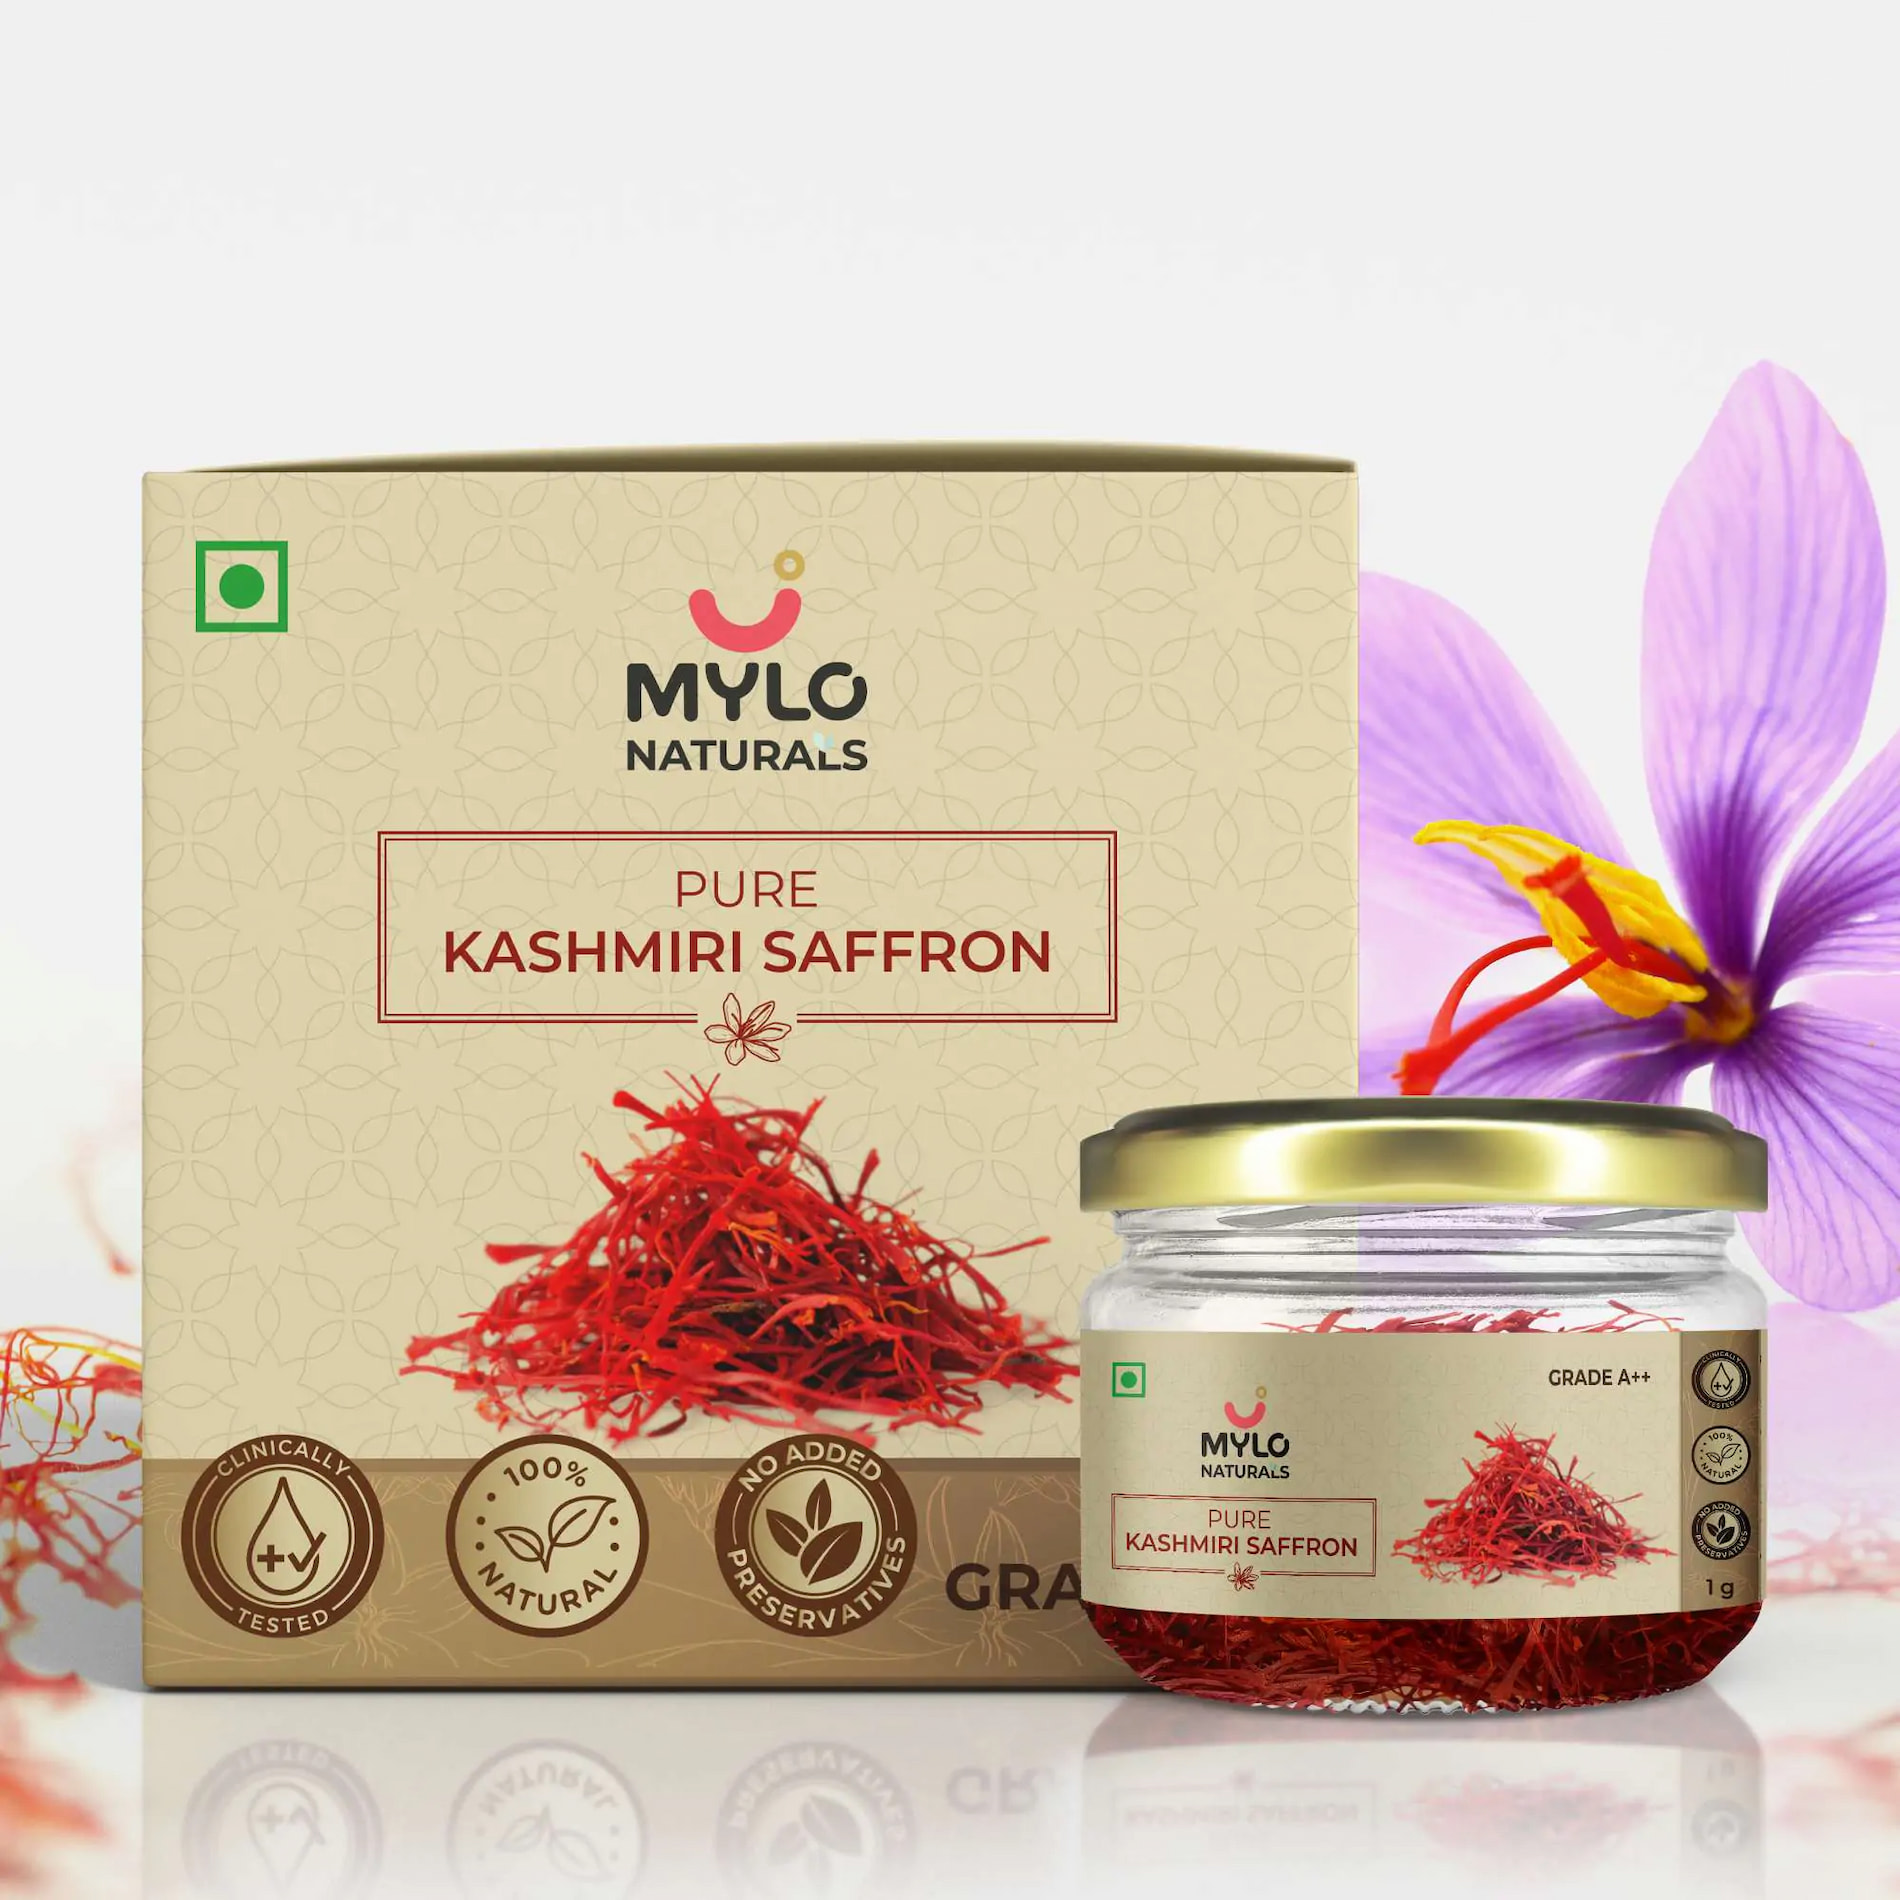 Mylo Naturals Pure Kashmiri Saffron 1g